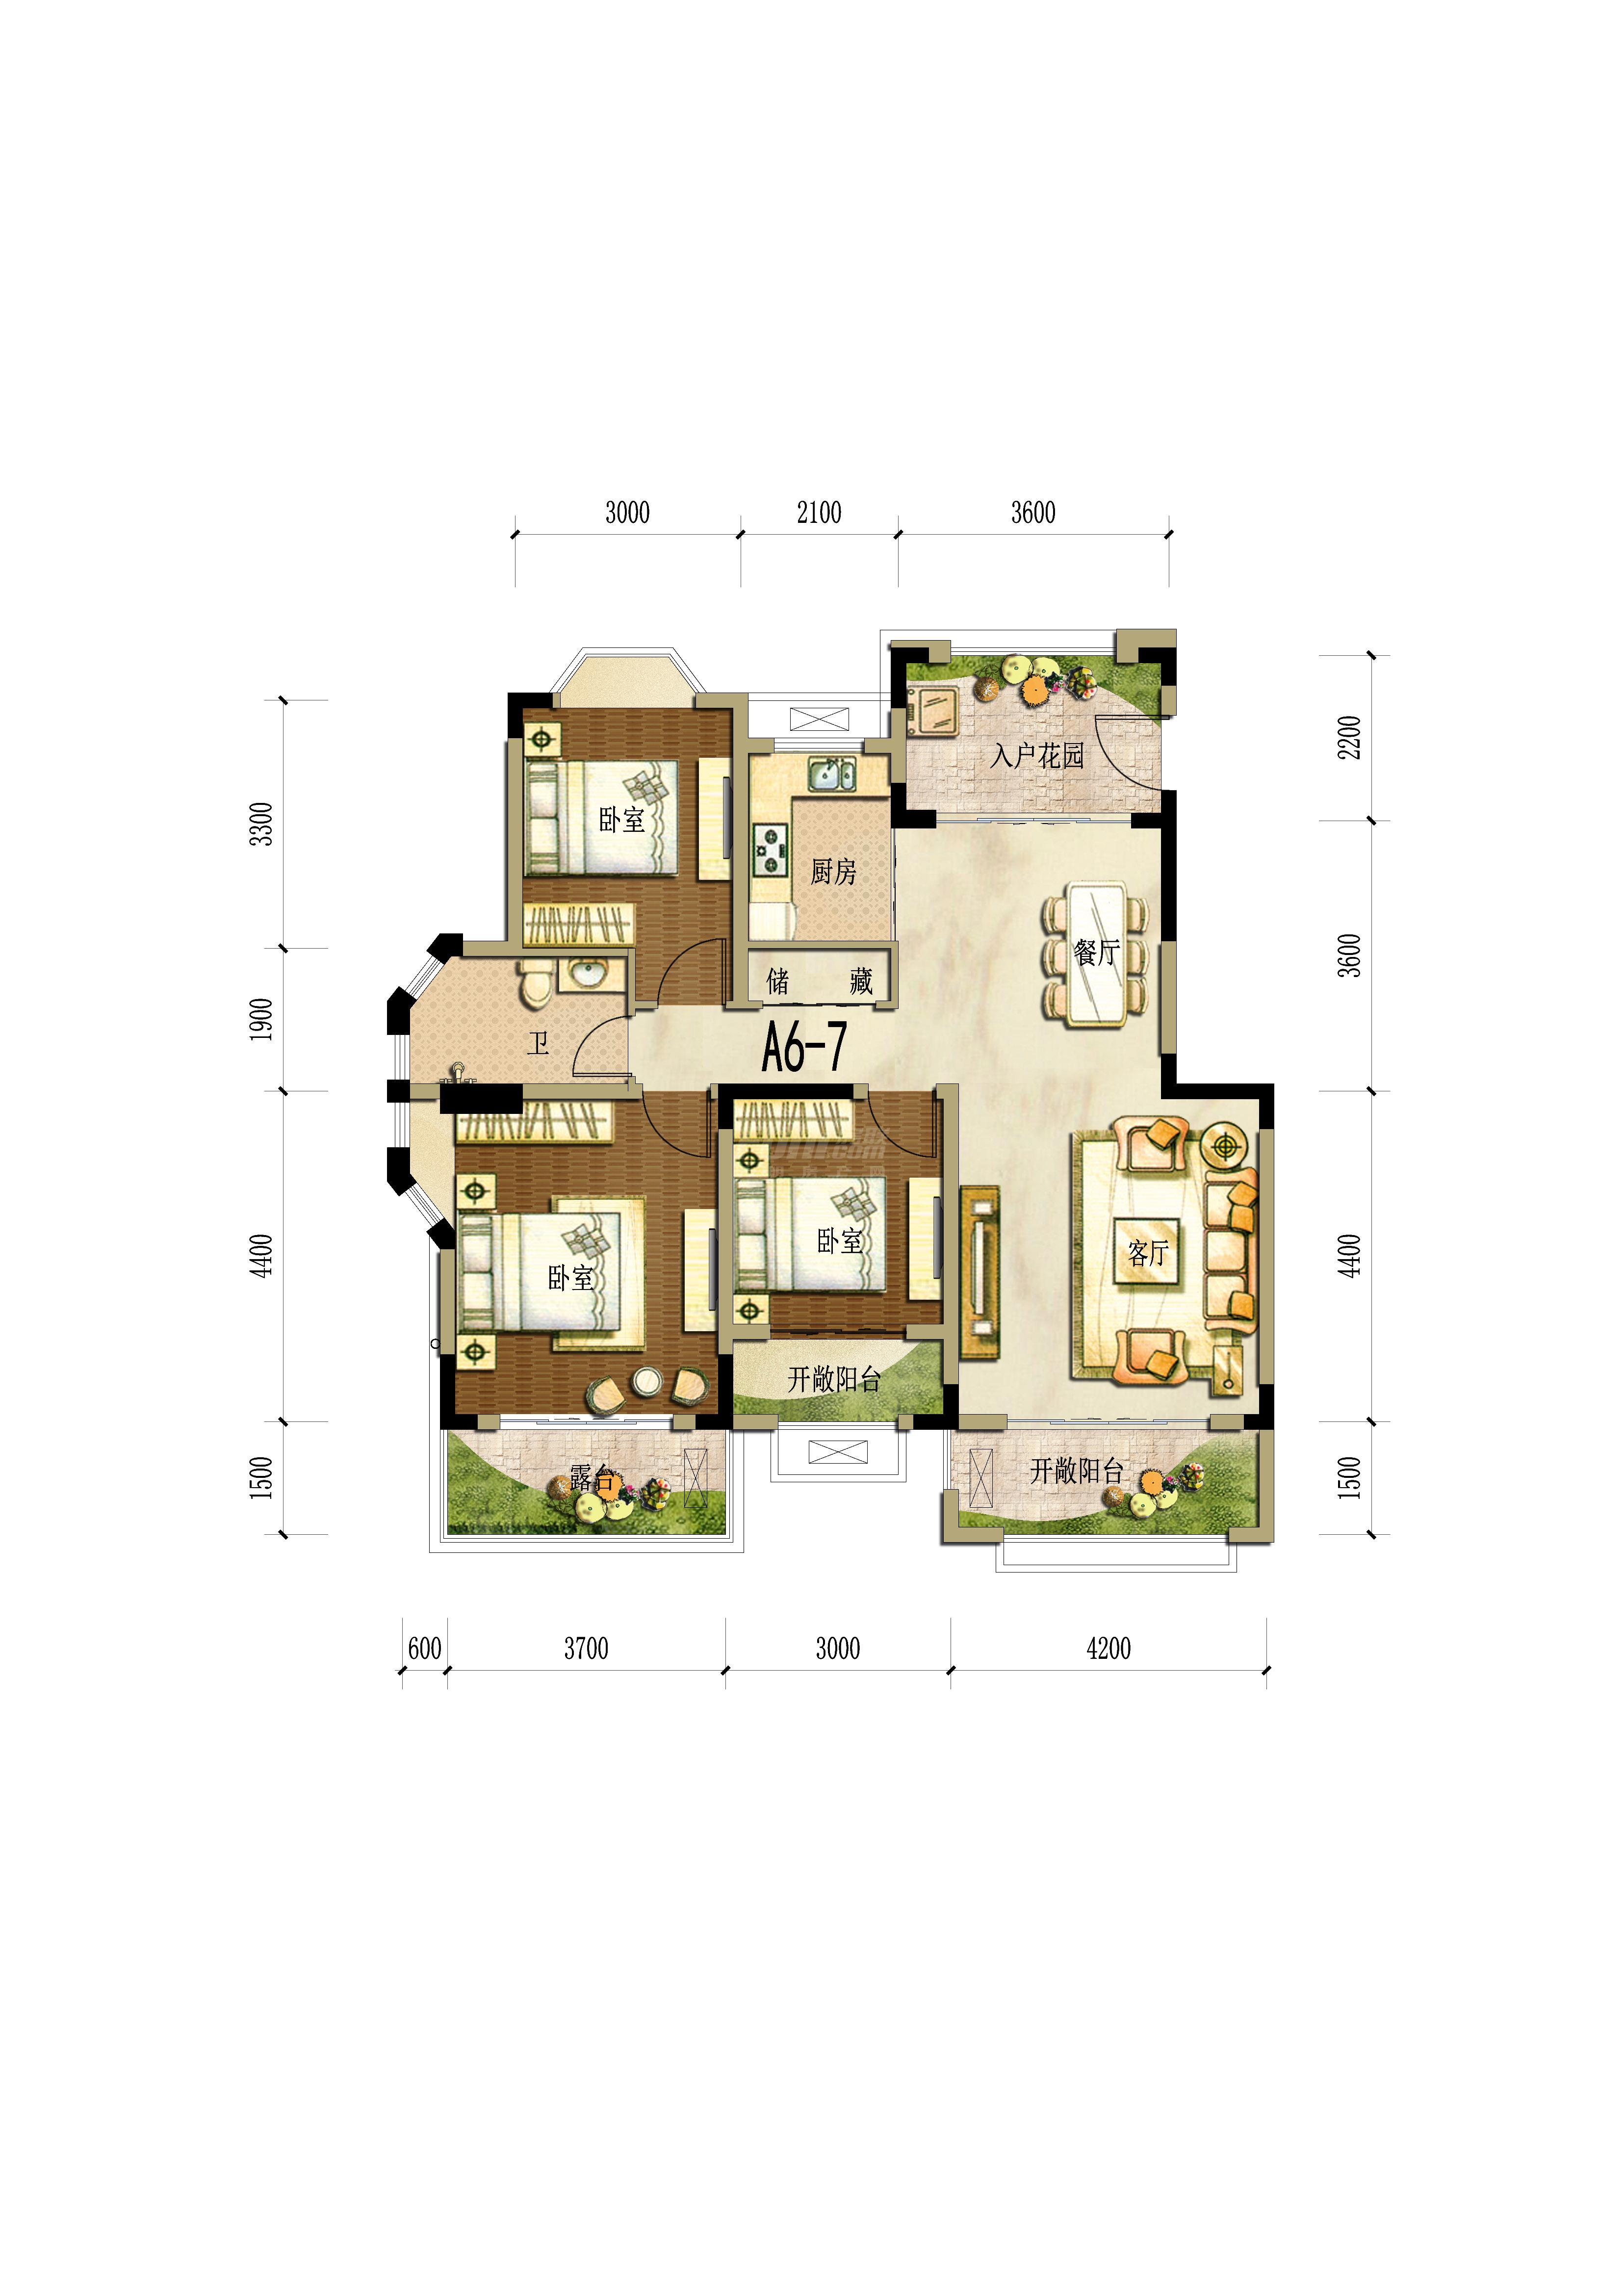 海德花园6号楼a6-7户型图,3室2厅1卫105.00平米- 成都